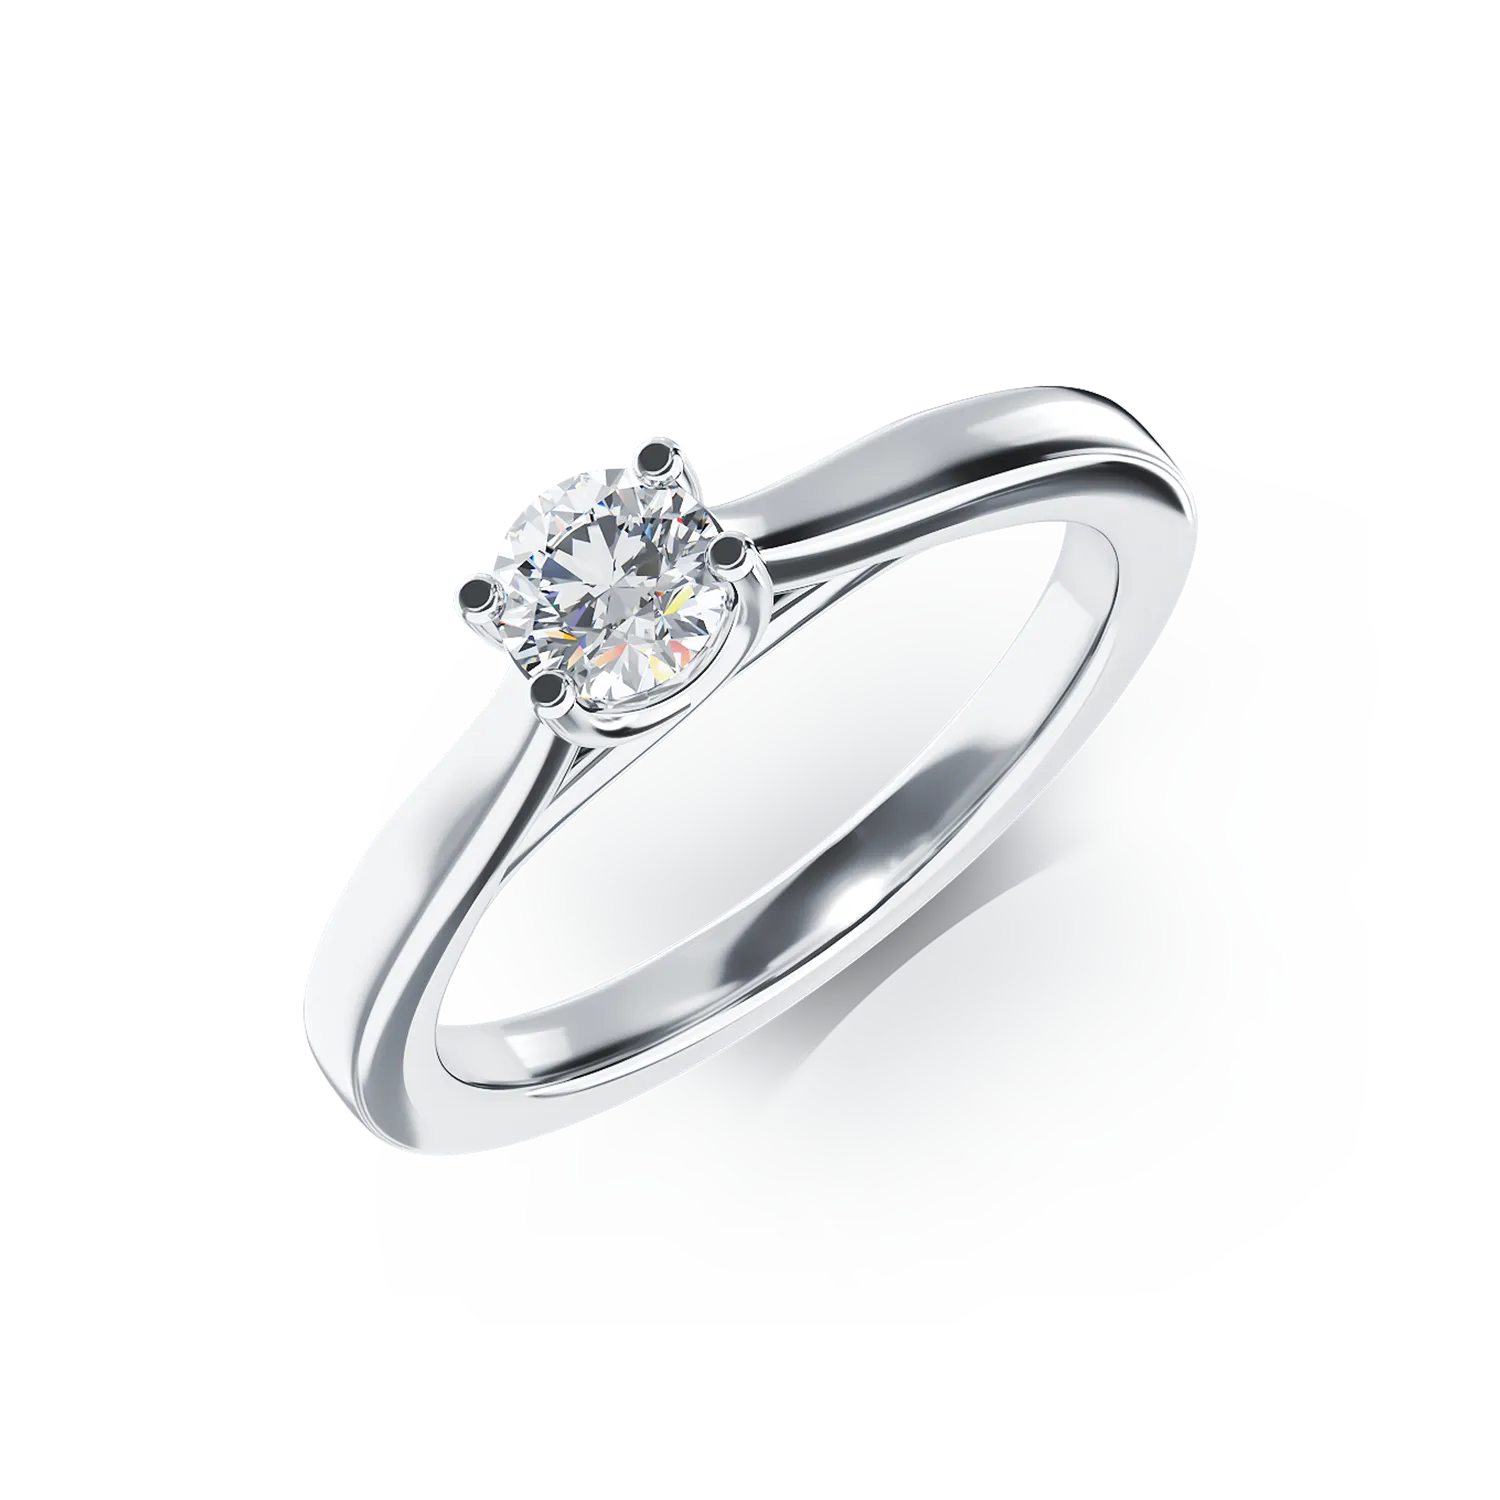 Eljegyzési gyűrű 18K-os fehér aranyból 0,26ct gyémánttal. Gramm: 3,06